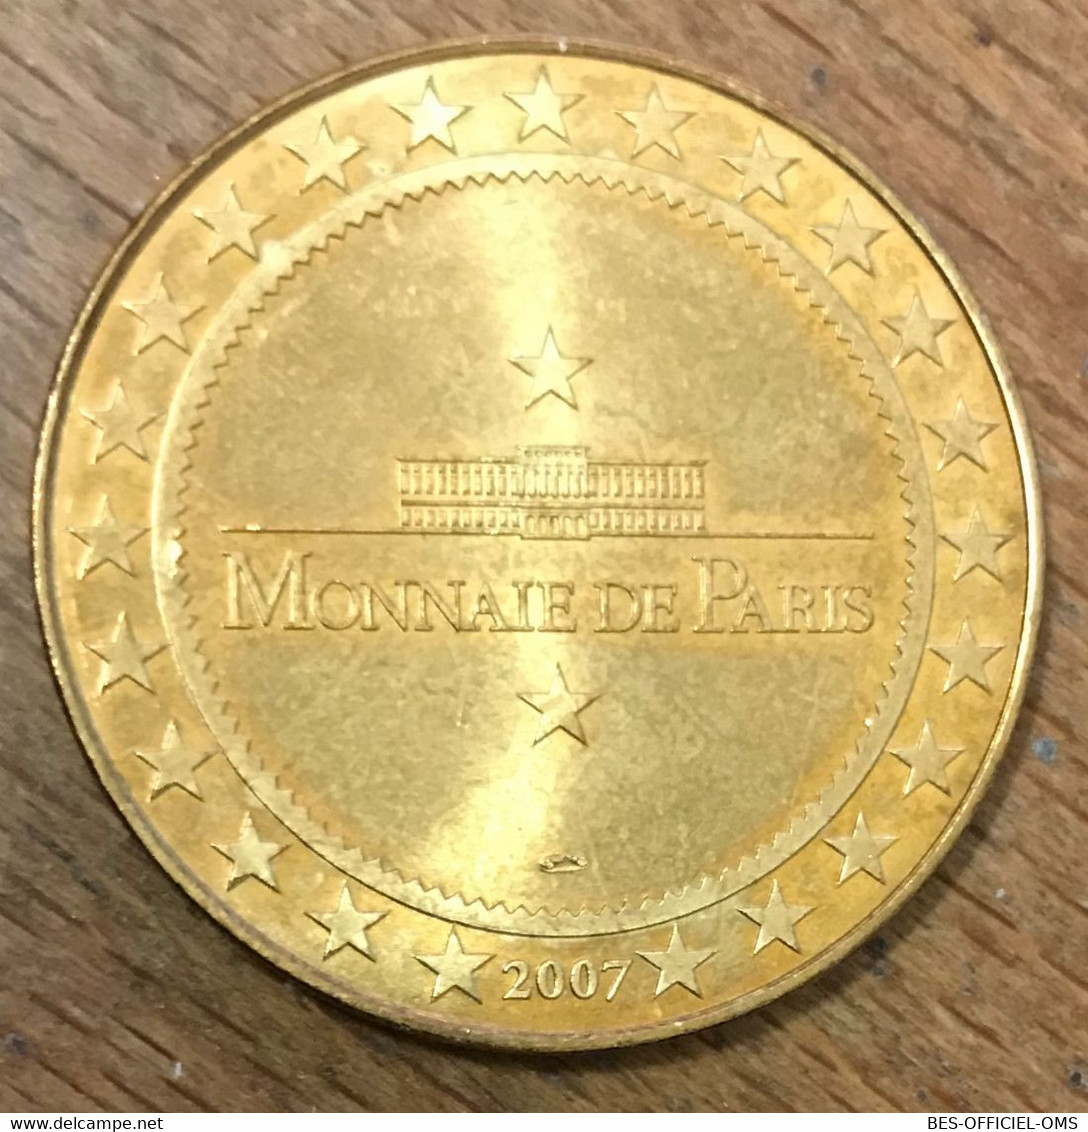 87 ORADOUR SUR GLANE MDP 2007 MÉDAILLE SOUVENIR MONNAIE DE PARIS JETON TOURISTIQUE MEDALS COINS TOKENS - 2007